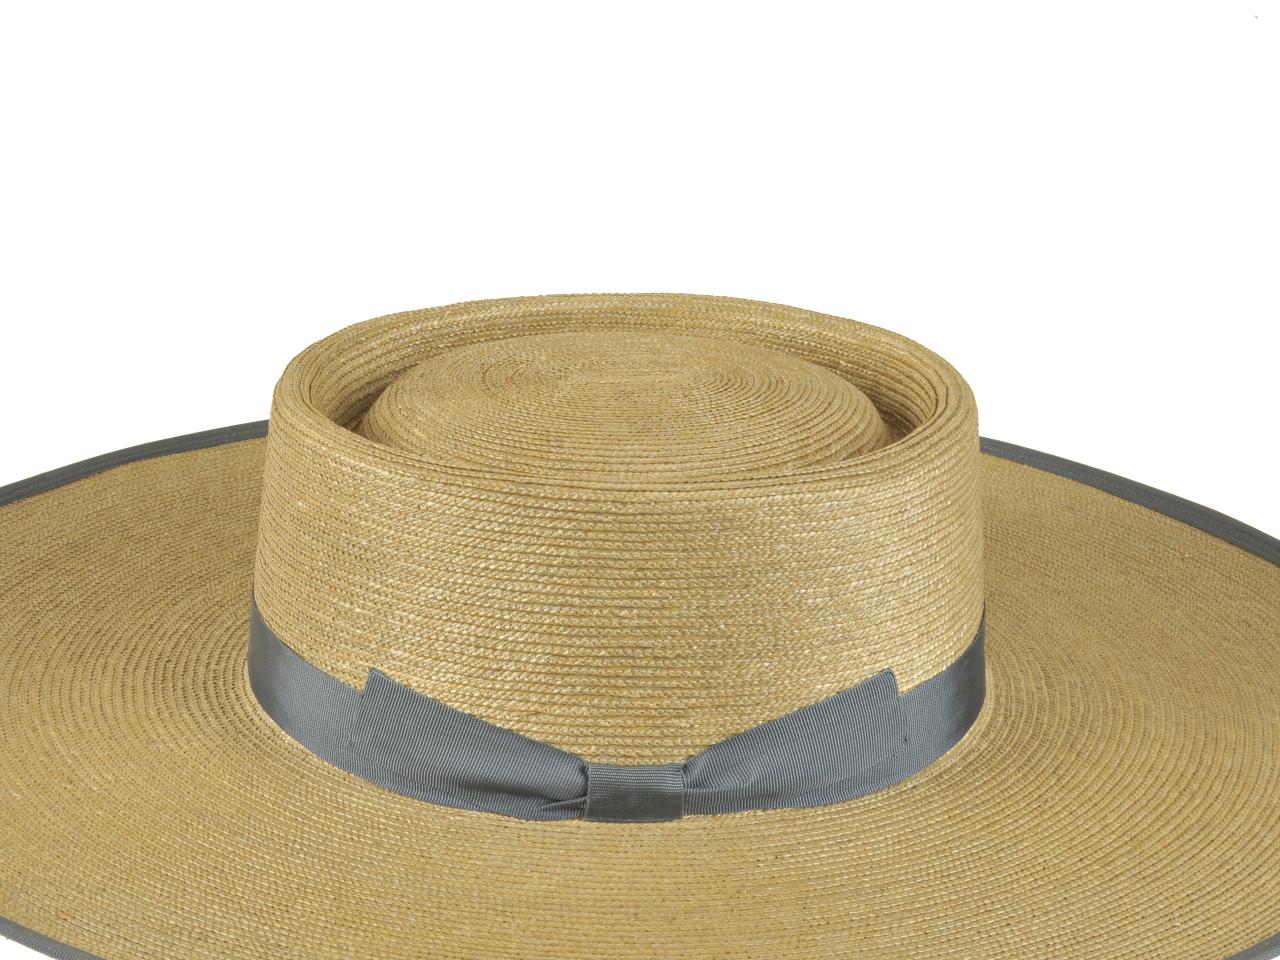 Detalle de sombrero de huaso, tejido en paja teatina teñida con tintes naturales